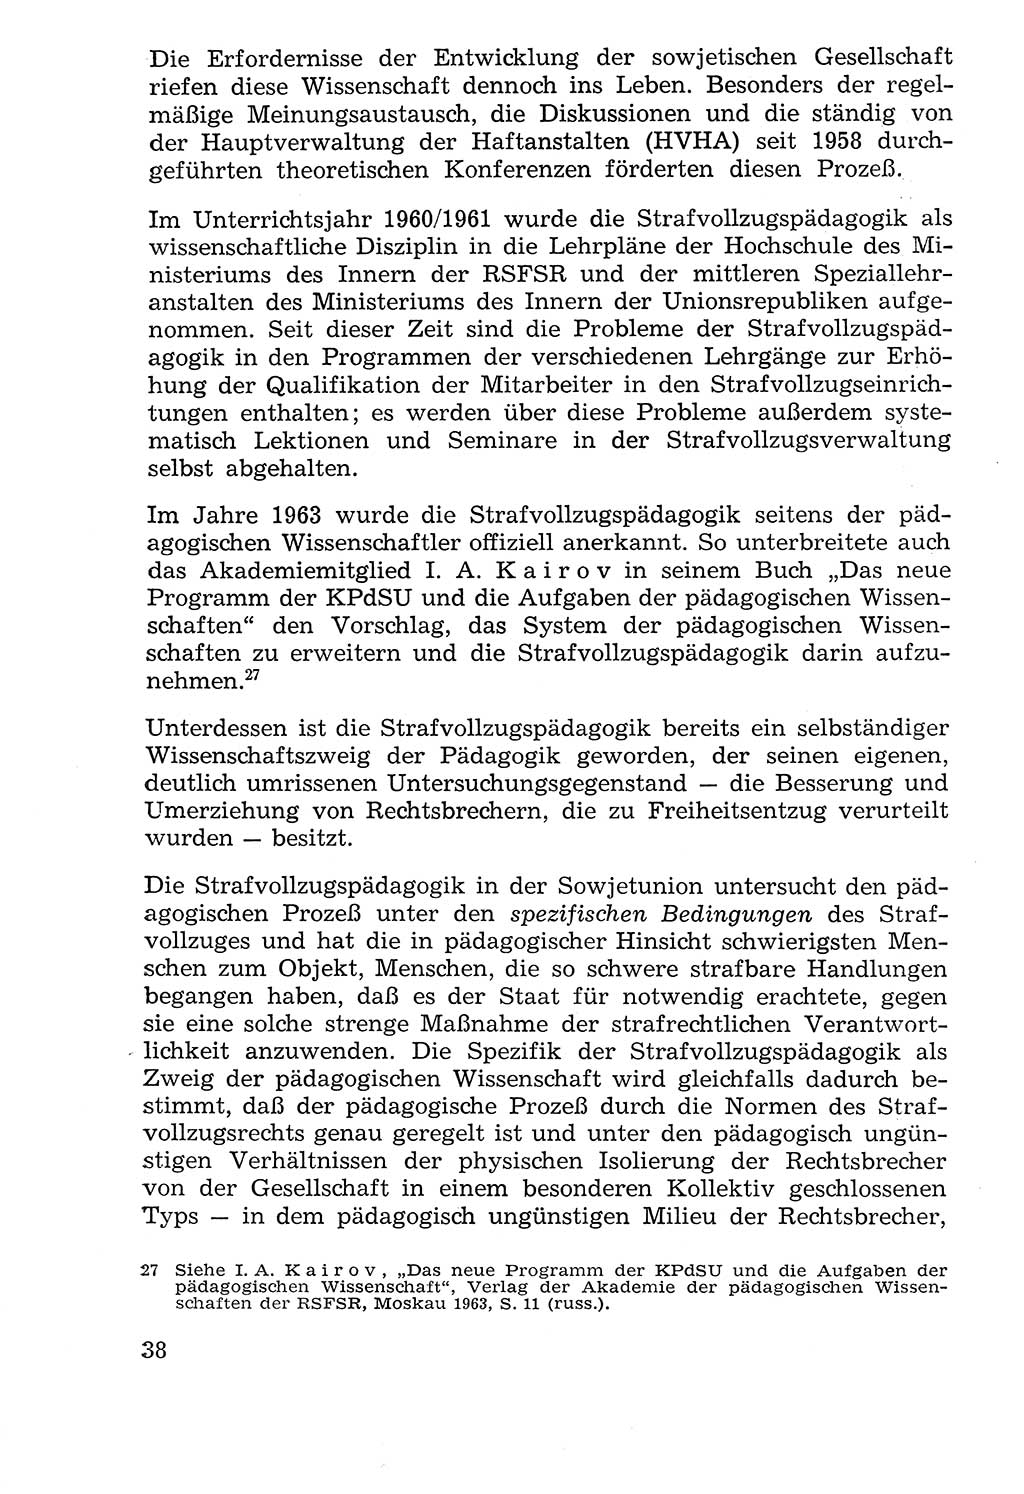 Lehrbuch der Strafvollzugspädagogik [Deutsche Demokratische Republik (DDR)] 1969, Seite 38 (Lb. SV-Pd. DDR 1969, S. 38)